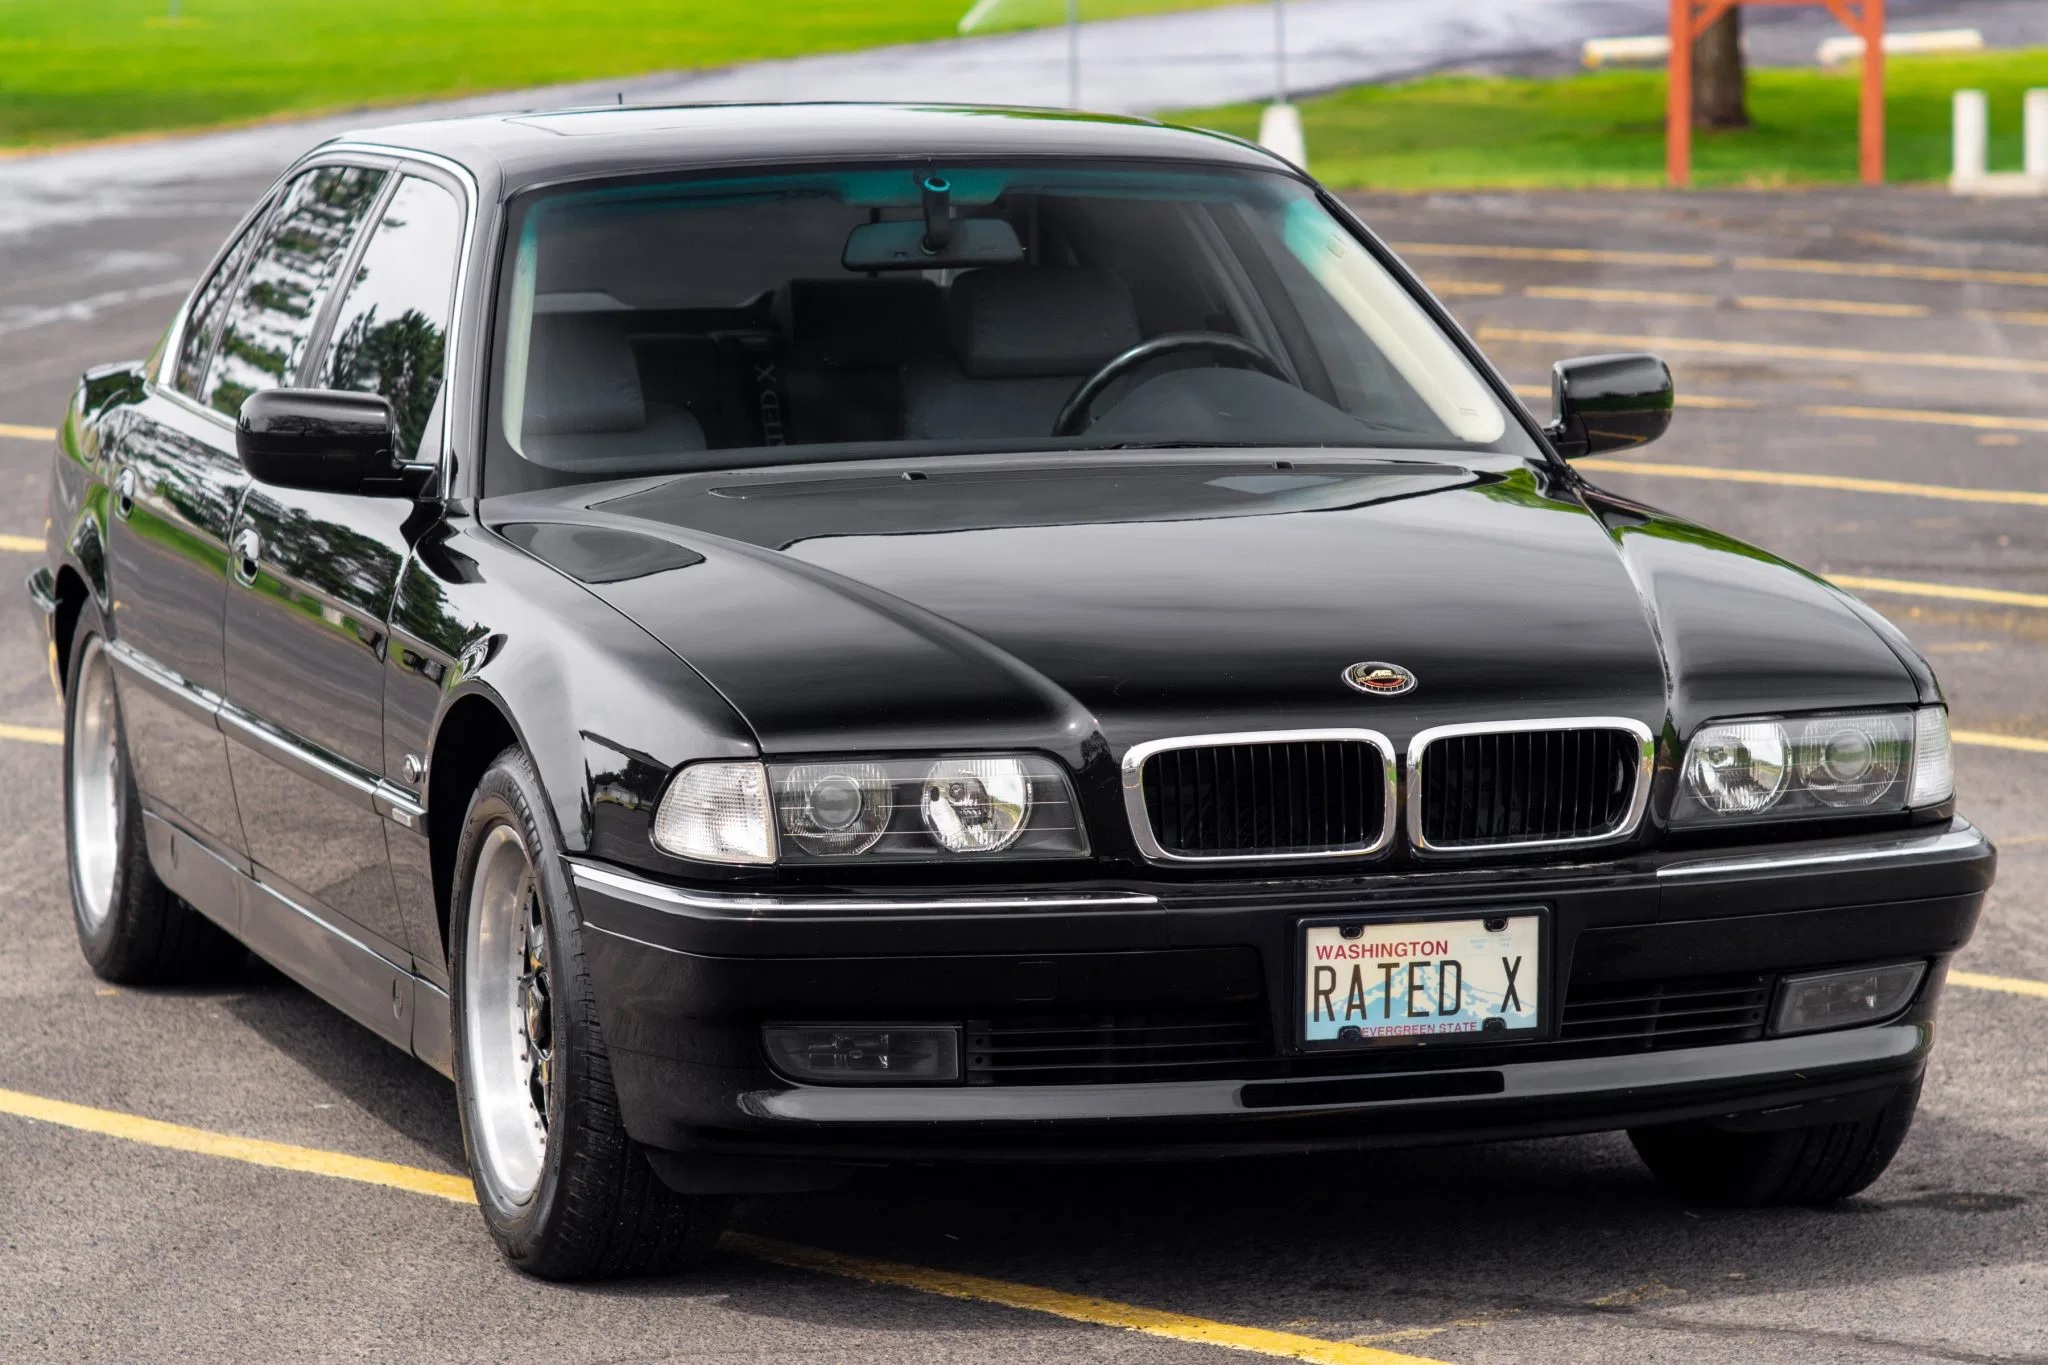 A black 1998 BMW 740iL in a parking lot